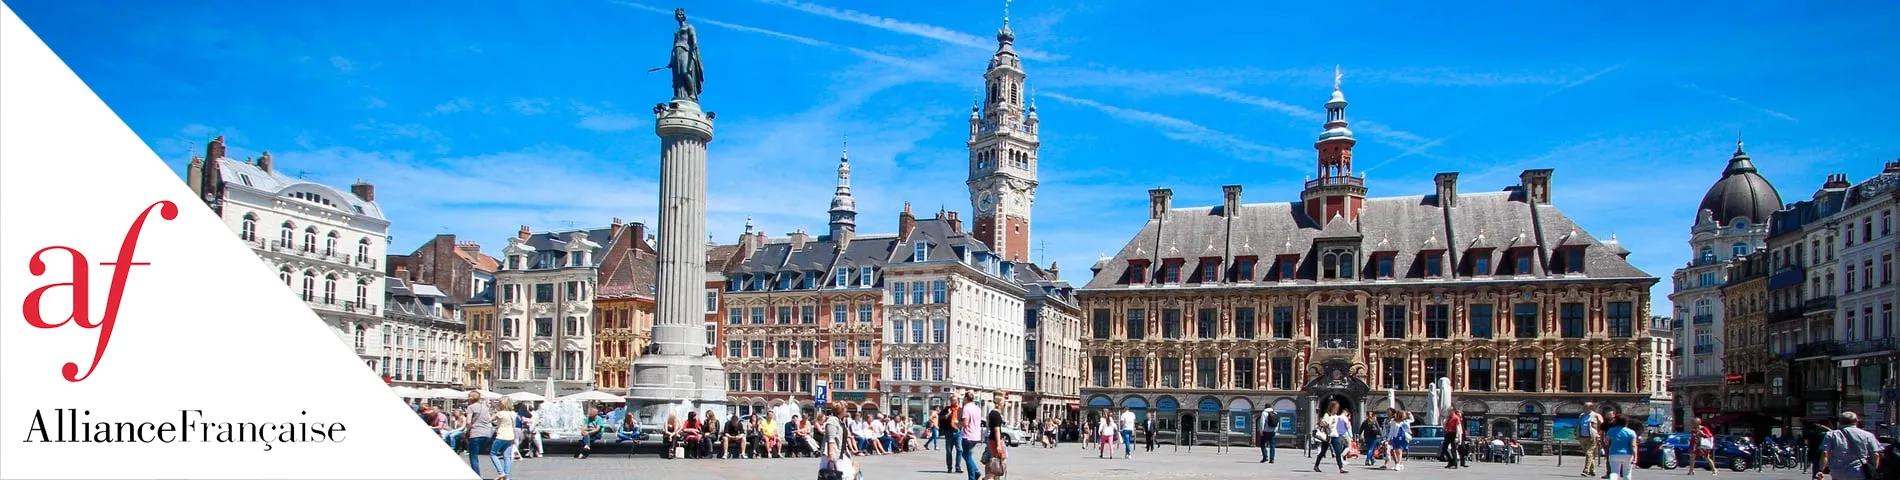 Lille - İş Ortaklığı Franchise Sistemi